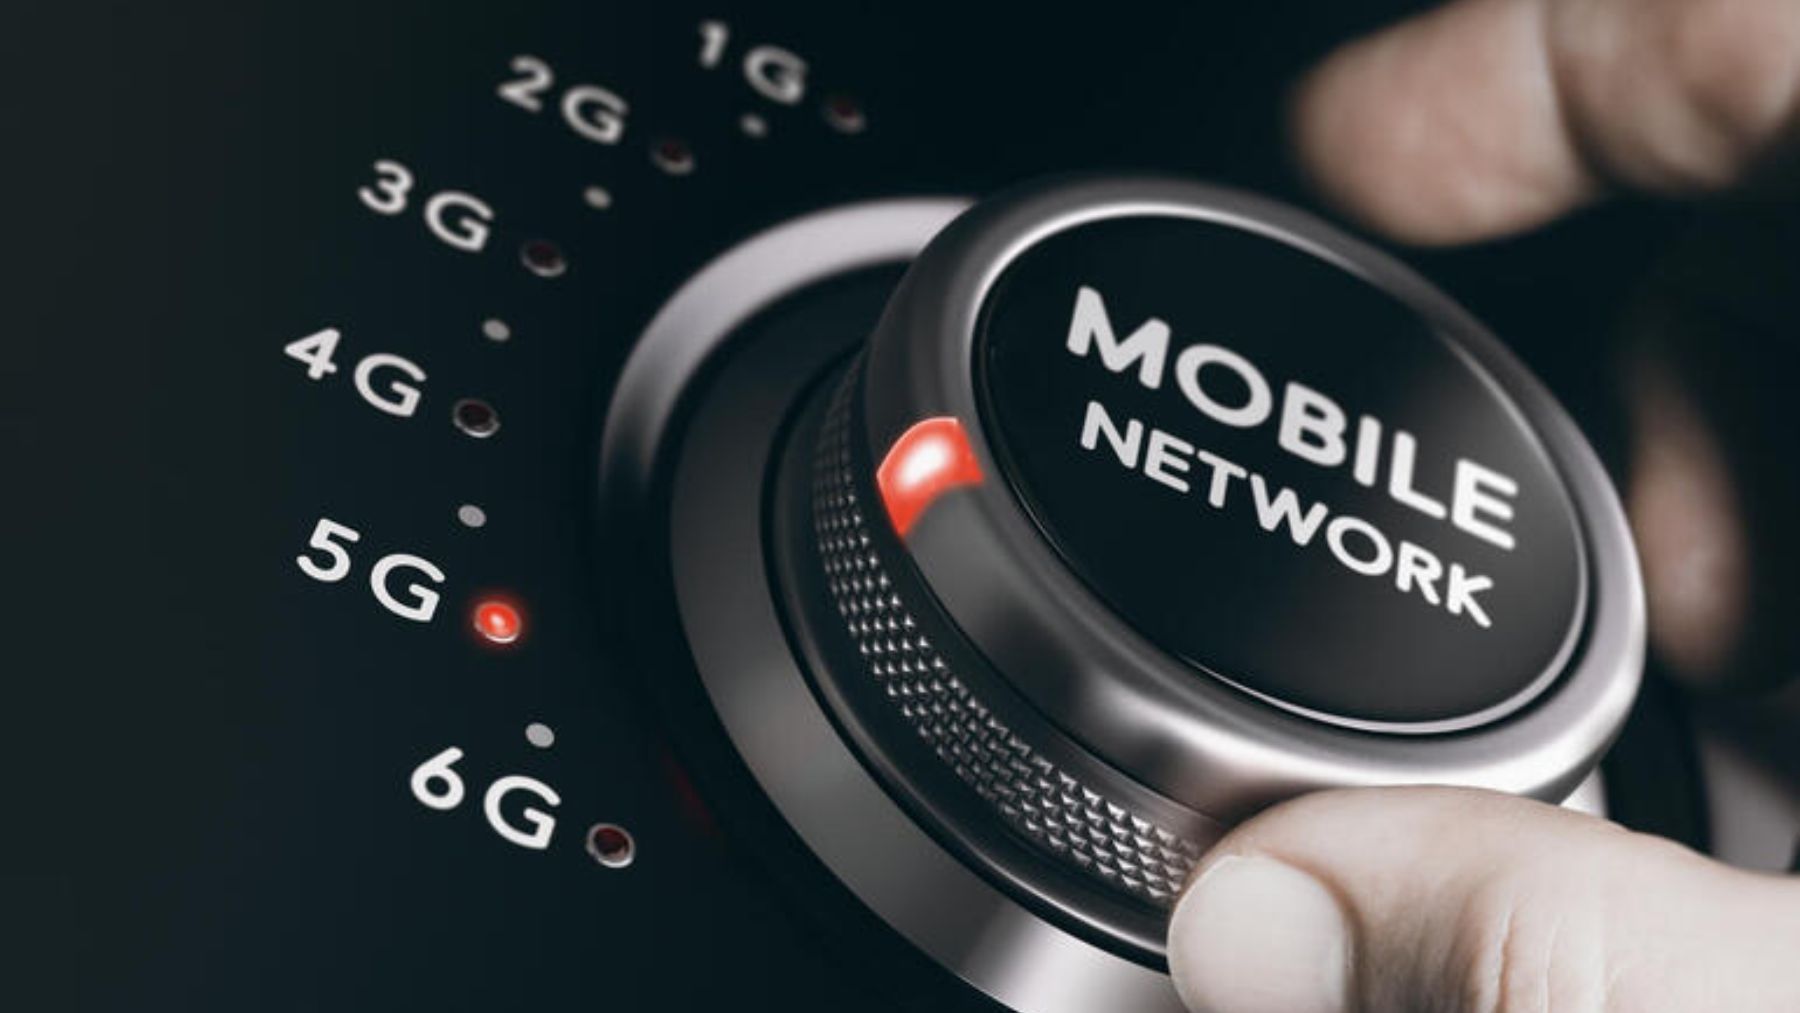 Cómo han evolucionado las redes móviles hasta llegar al 5G